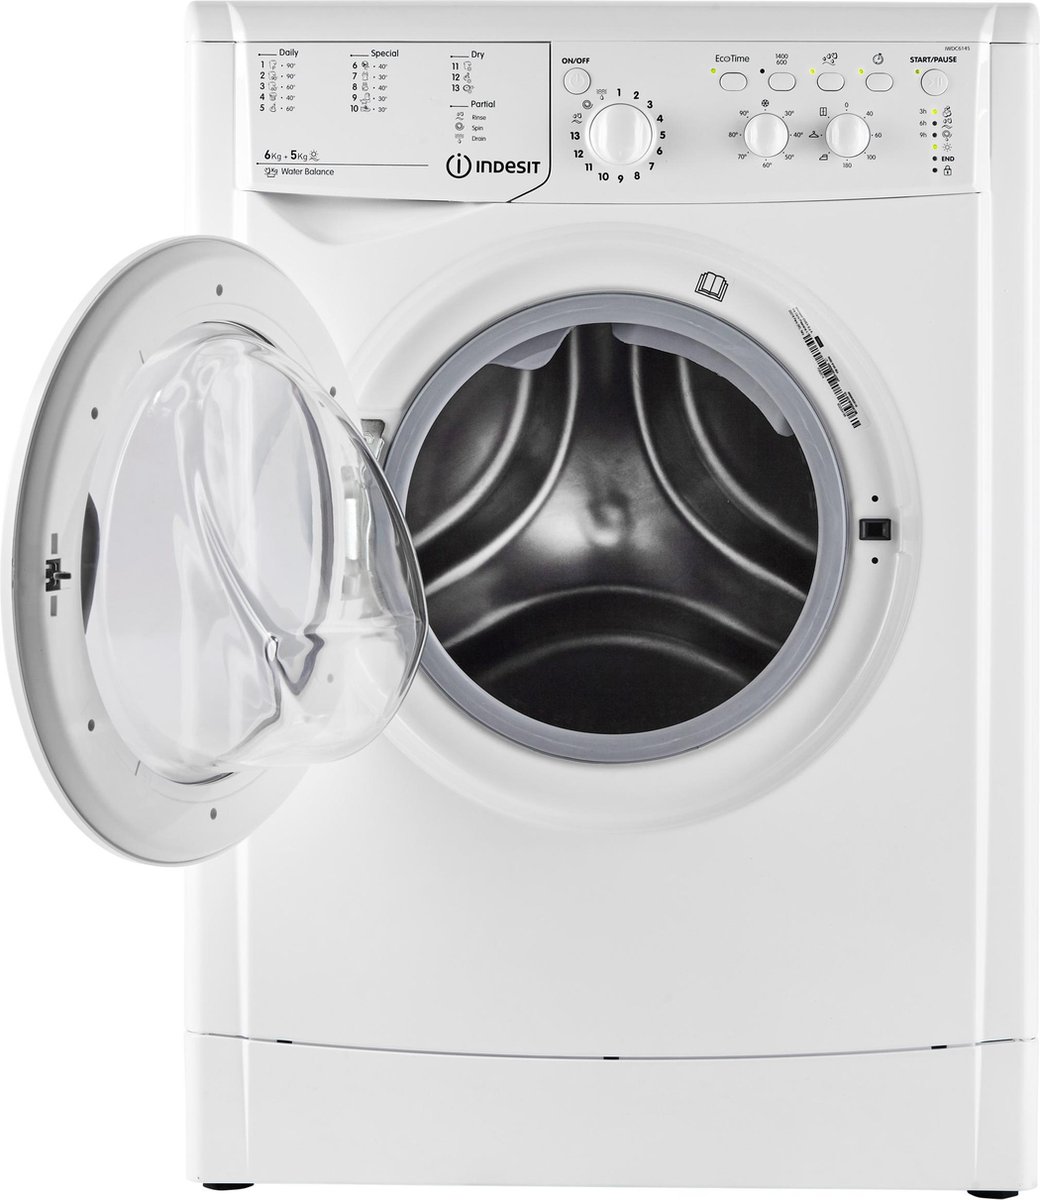 Indesit IWDC6145 machine à laver avec sèche linge Autoportante Charge avant  Blanc | bol.com